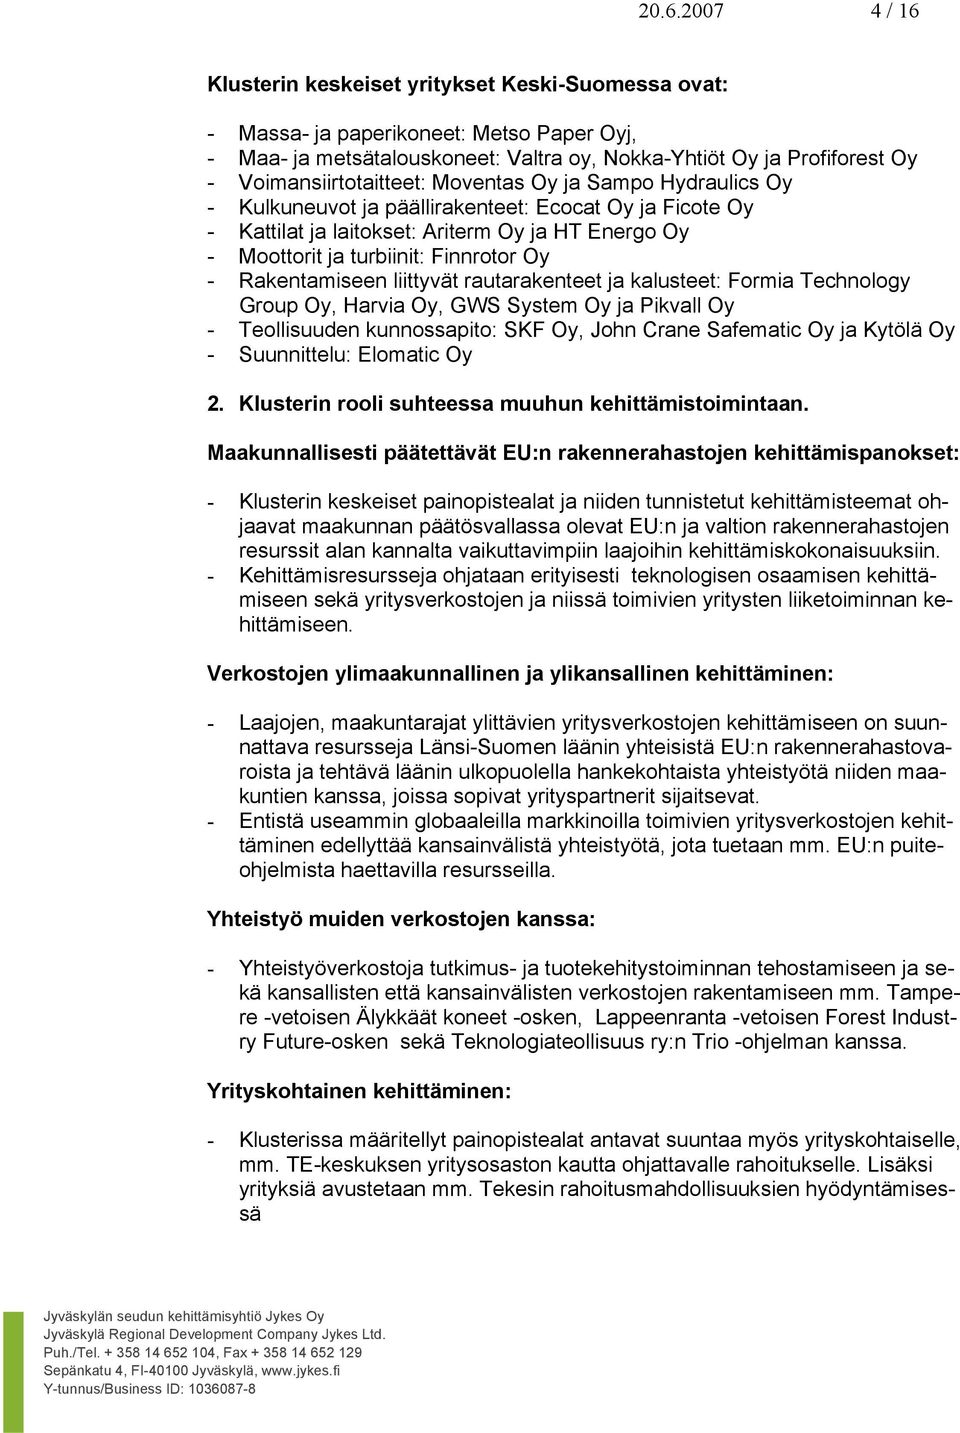 Finnrotor Oy - Rakentamiseen liittyvät rautarakenteet ja kalusteet: Formia Technology Group Oy, Harvia Oy, GWS System Oy ja Pikvall Oy - Teollisuuden kunnossapito: SKF Oy, John Crane Safematic Oy ja